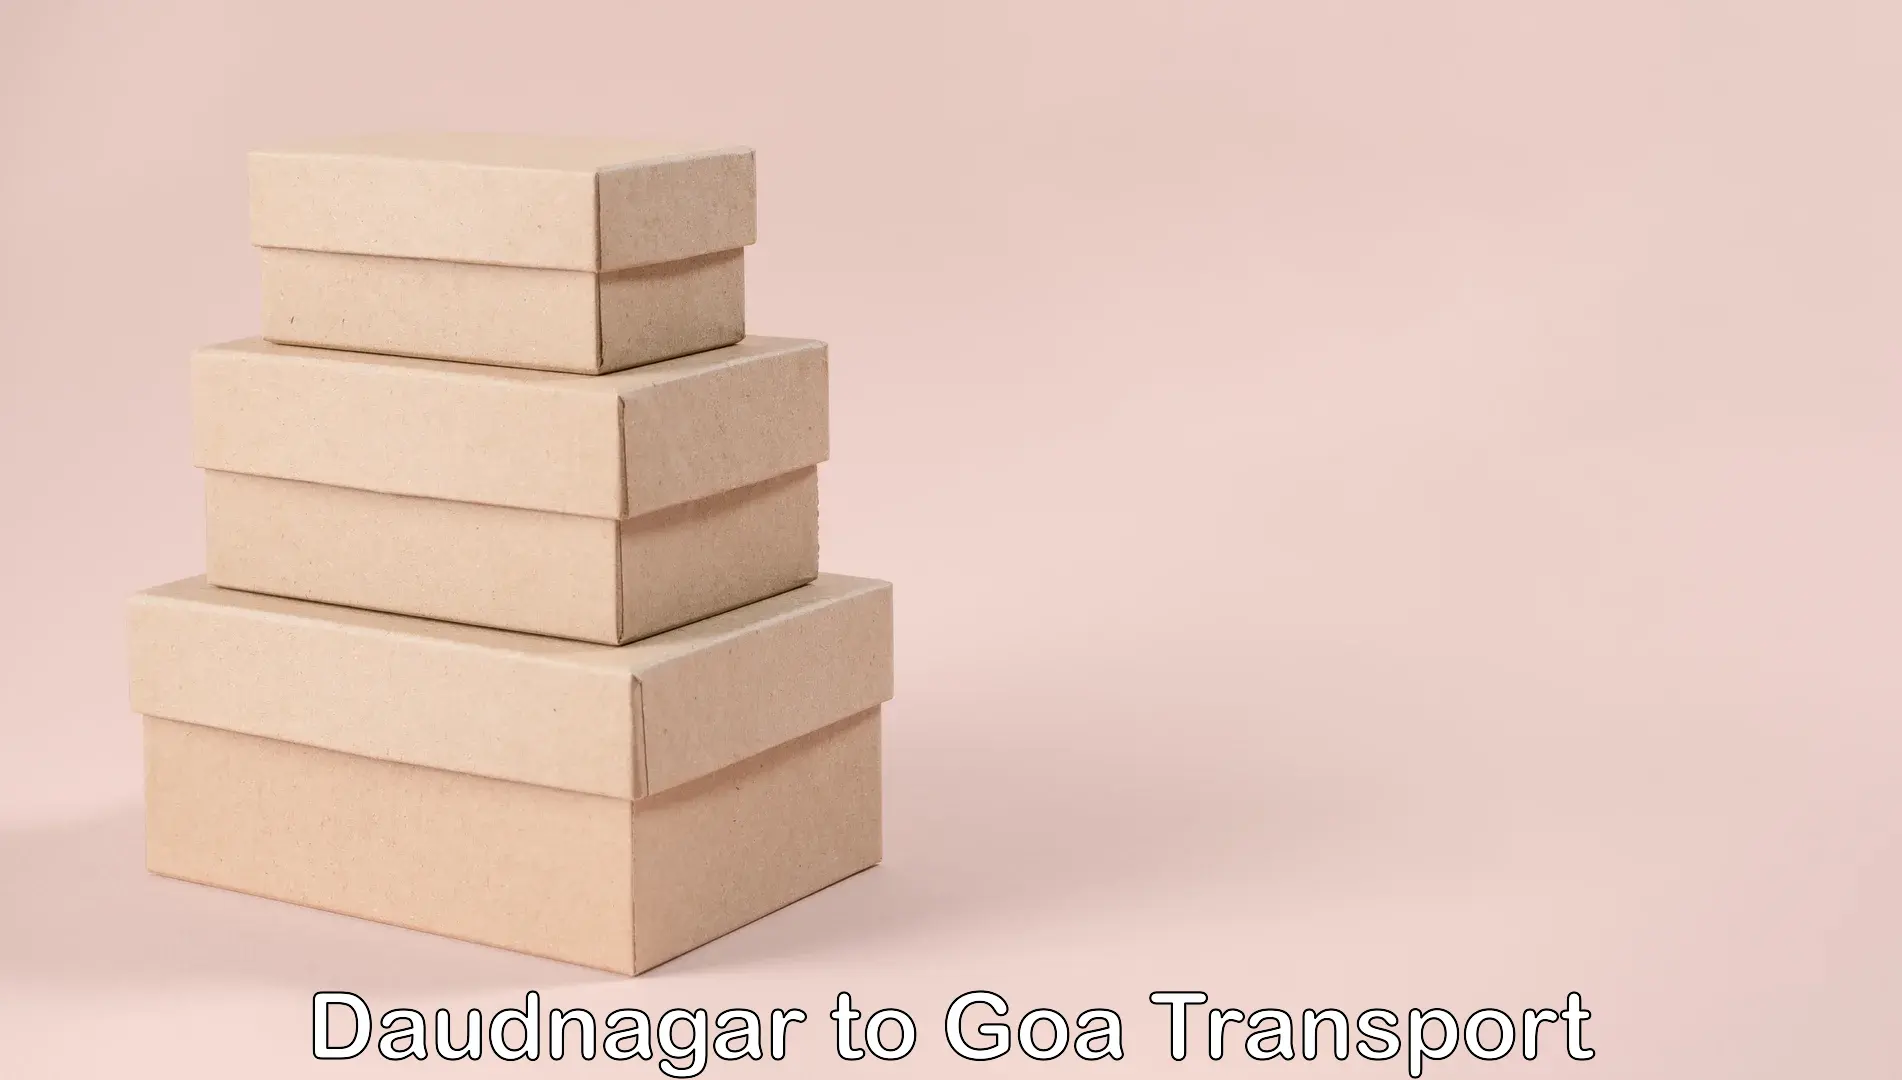 Daily parcel service transport Daudnagar to Mormugao Port